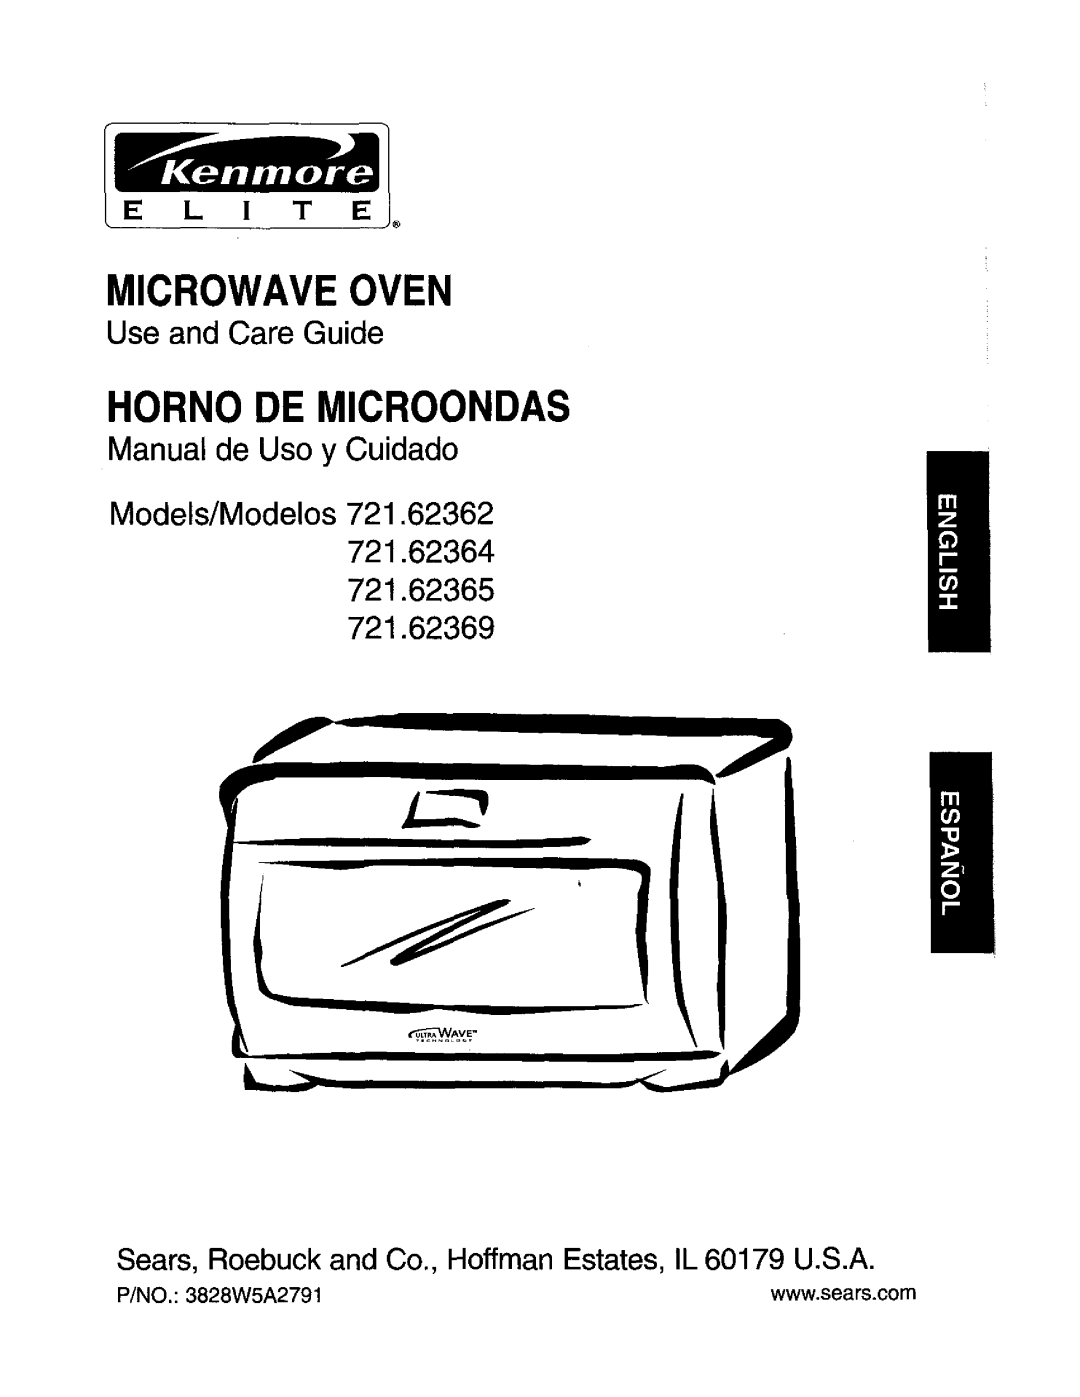 Kenmore 721.62364 manual Use and Care Guide, Manual de Uso y Cuidado, P/NO. 3828W5A2791, Microwave Oven, Model#Modelos 